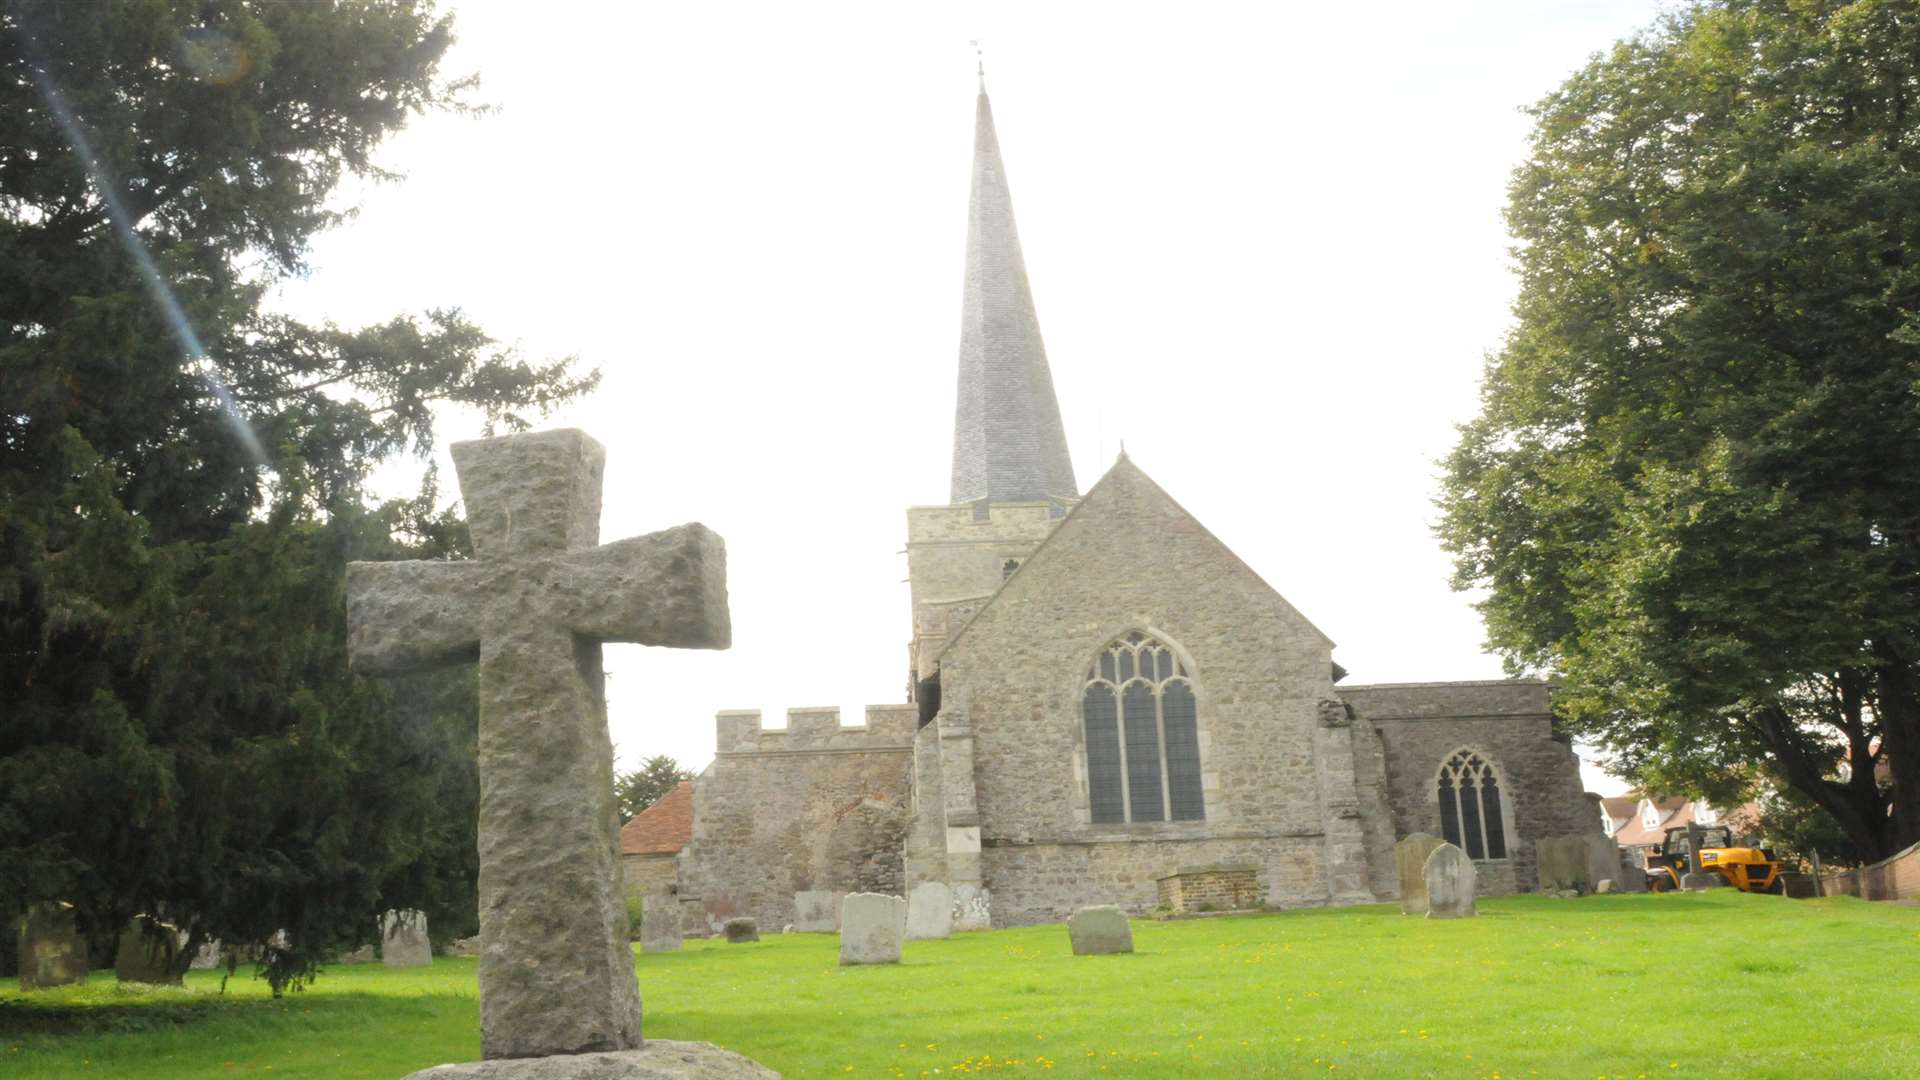 The church and churchyard at Hoo St Werburgh